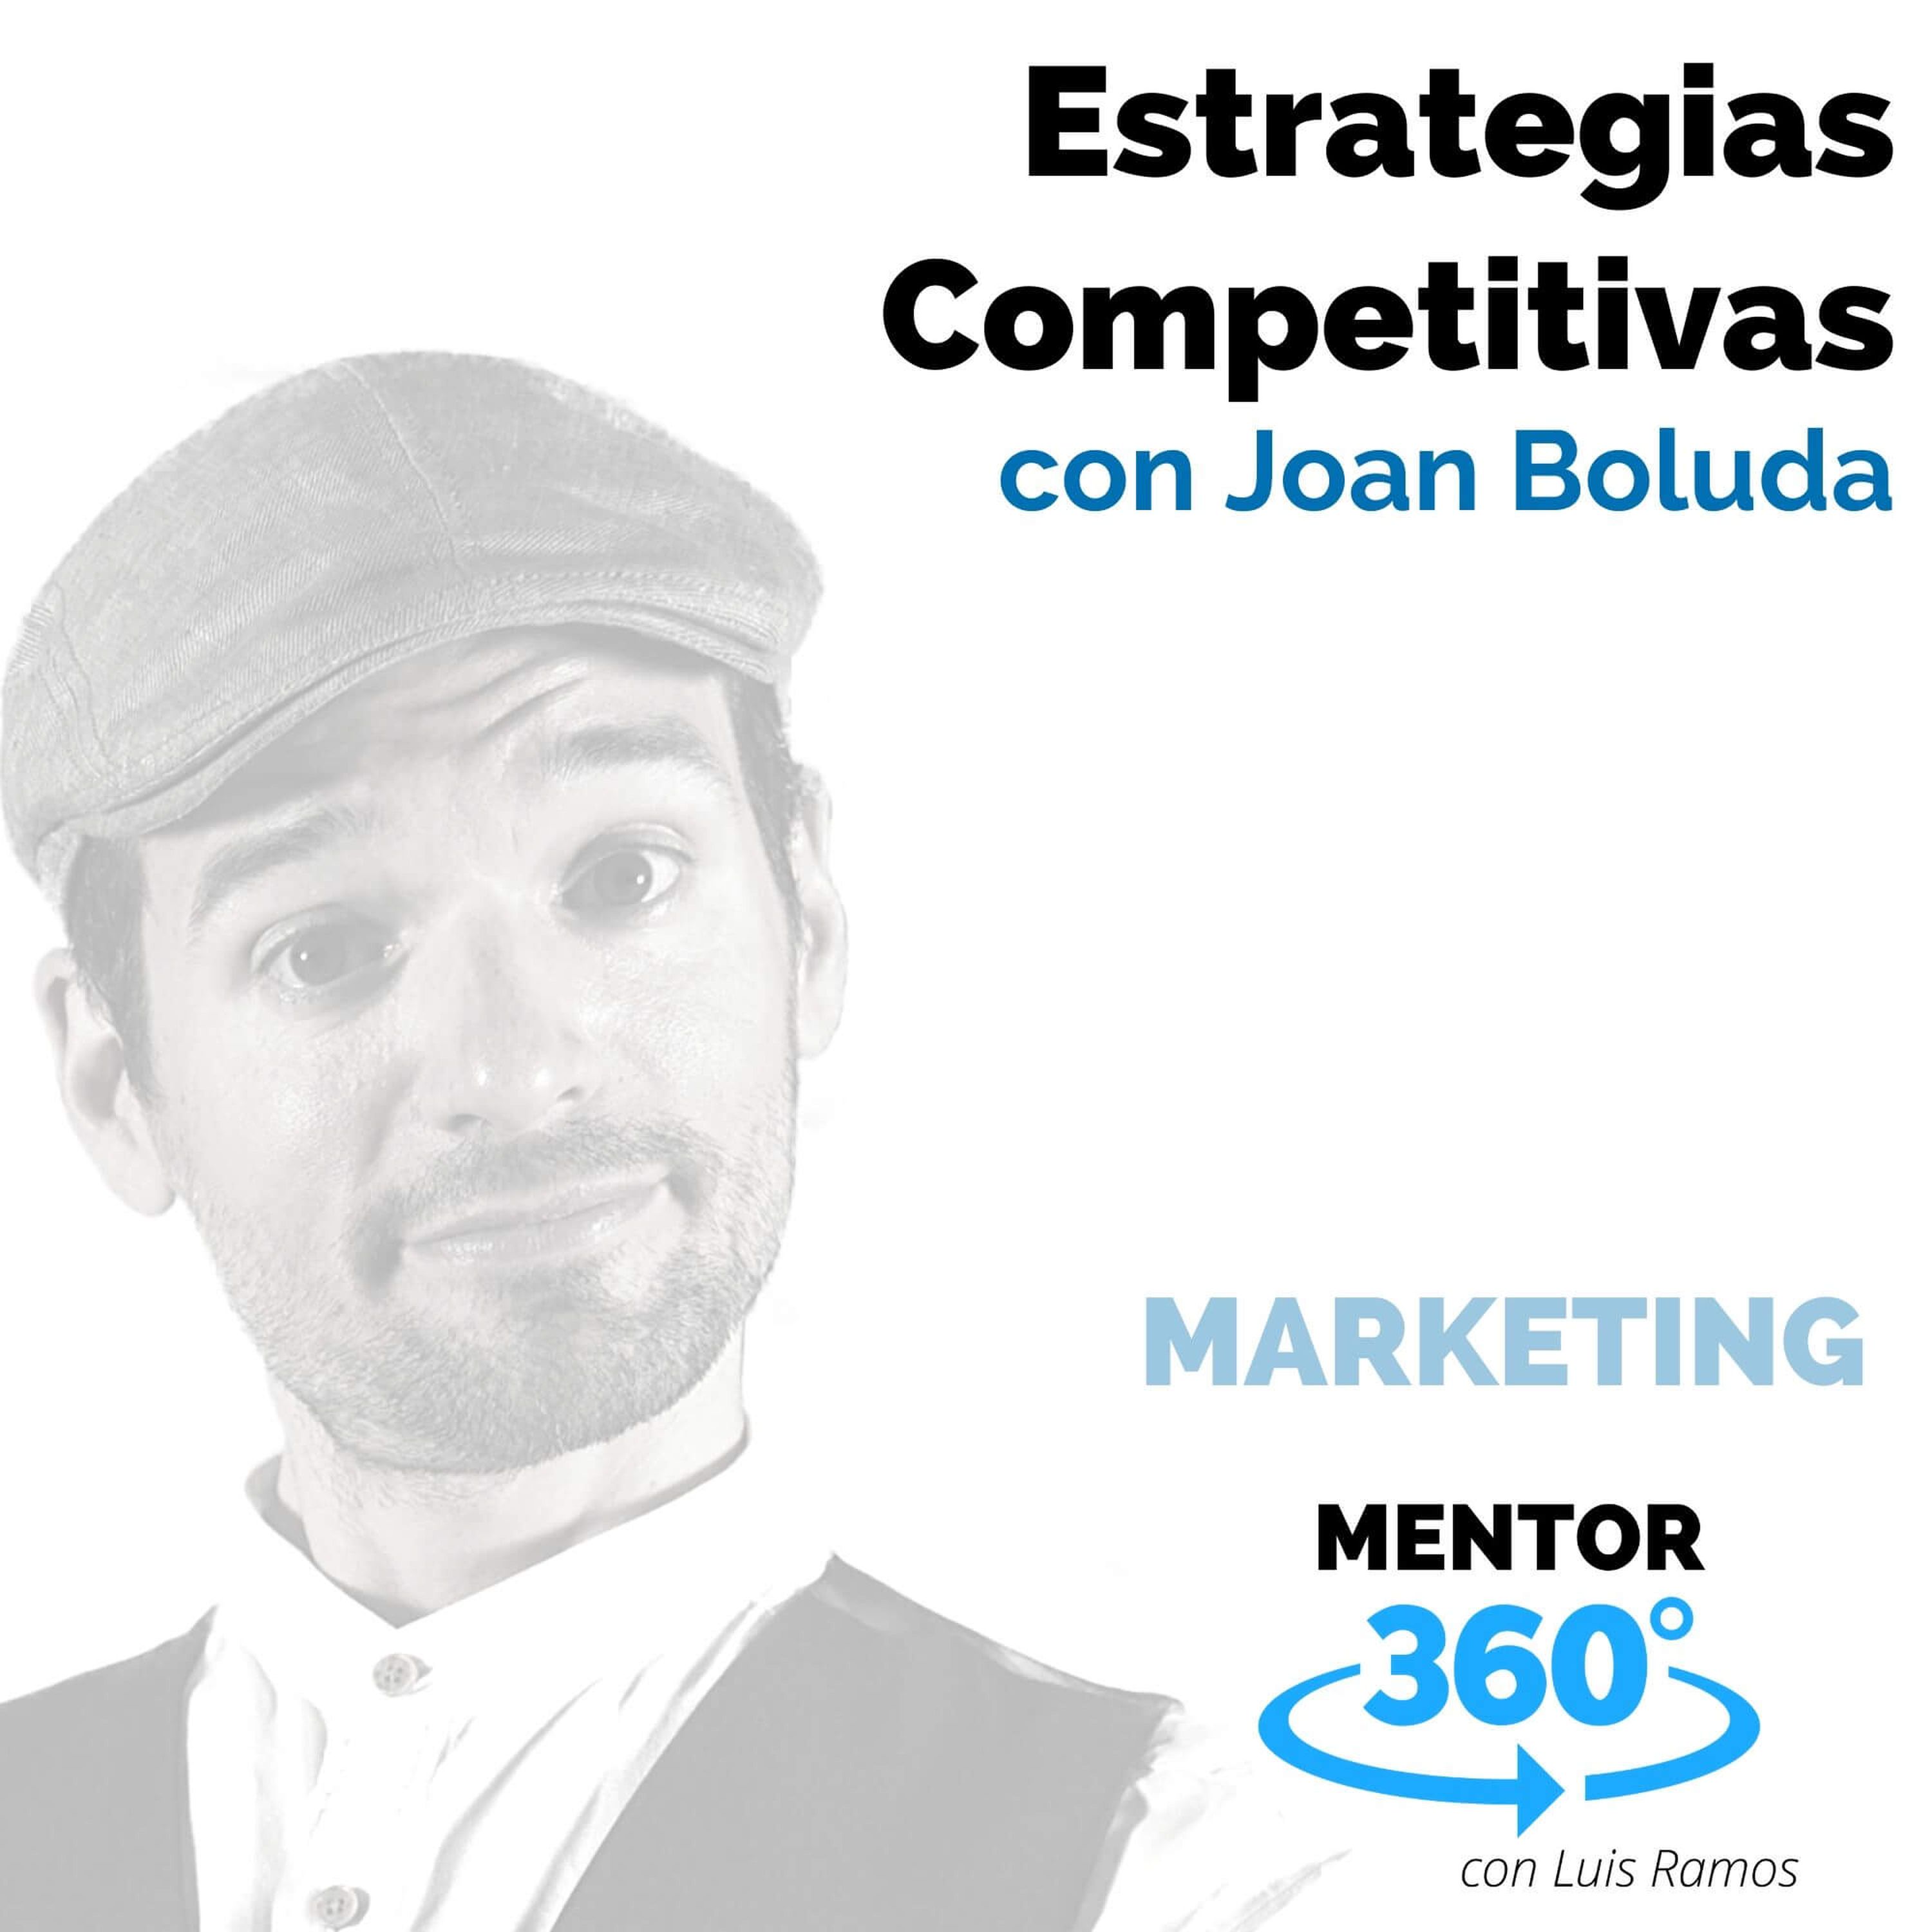 Estrategias competitivas, con Joan Boluda - MARKETING - MENTOR360